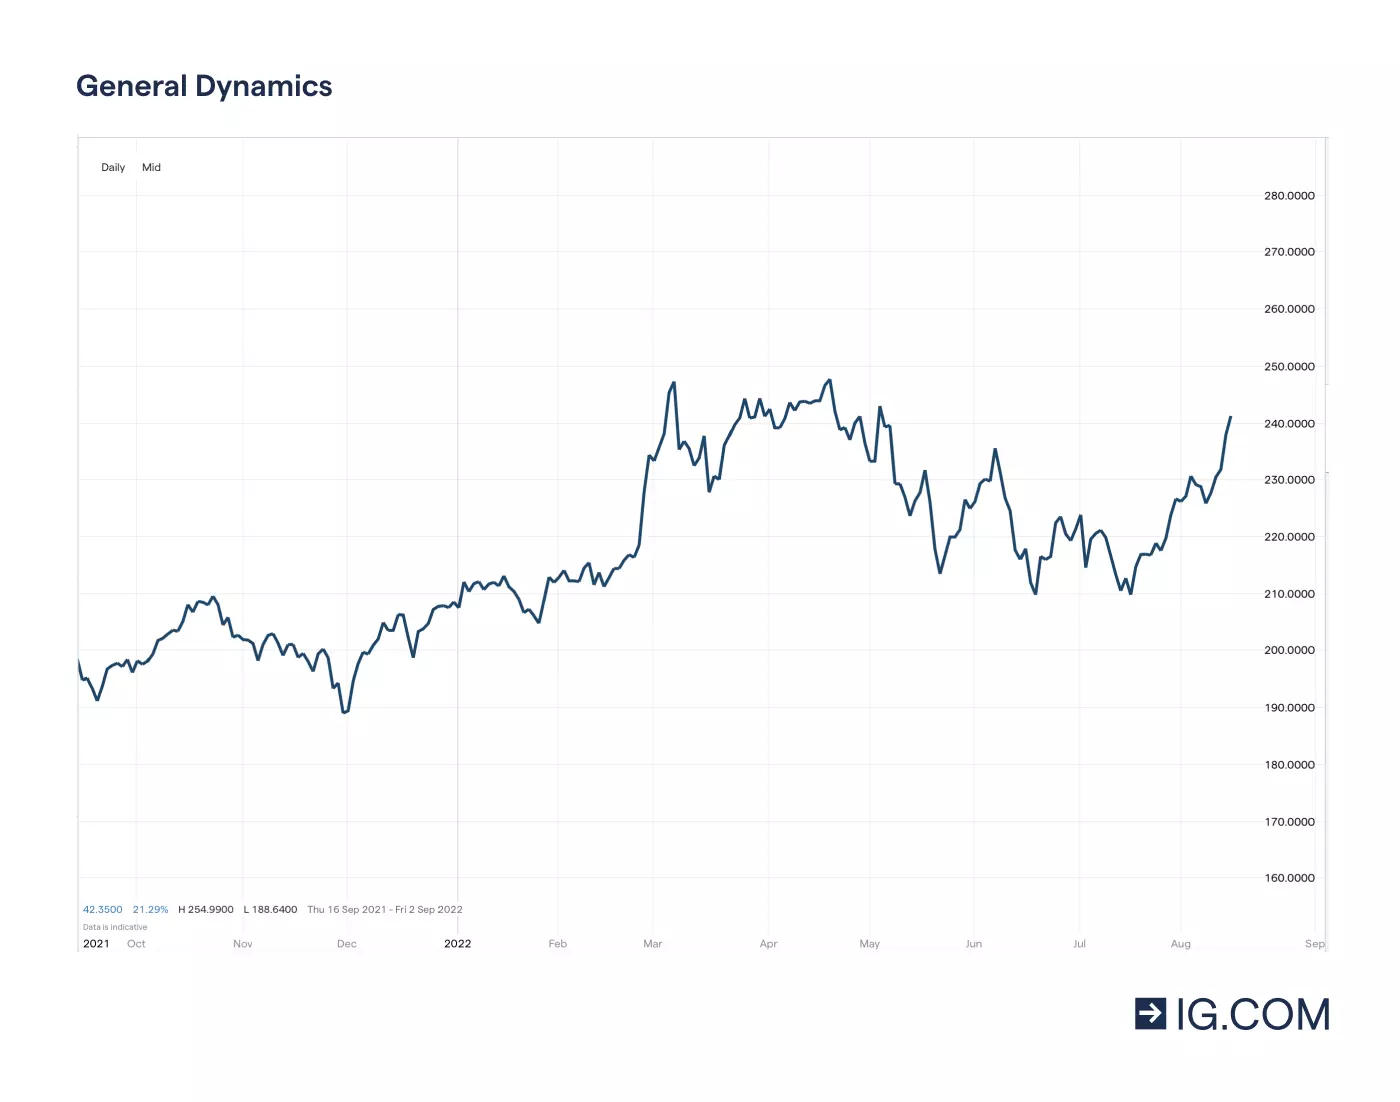 Graf som visar General Dynamics-aktiens olika prisnivåer på en ettårig tidslinje – bland annat en bottennotering på 191,44 i december 2021 innan den steg till en toppnotering på 248,25 i april 2022 – samt aktiekursen på 217,08 i maj 2022